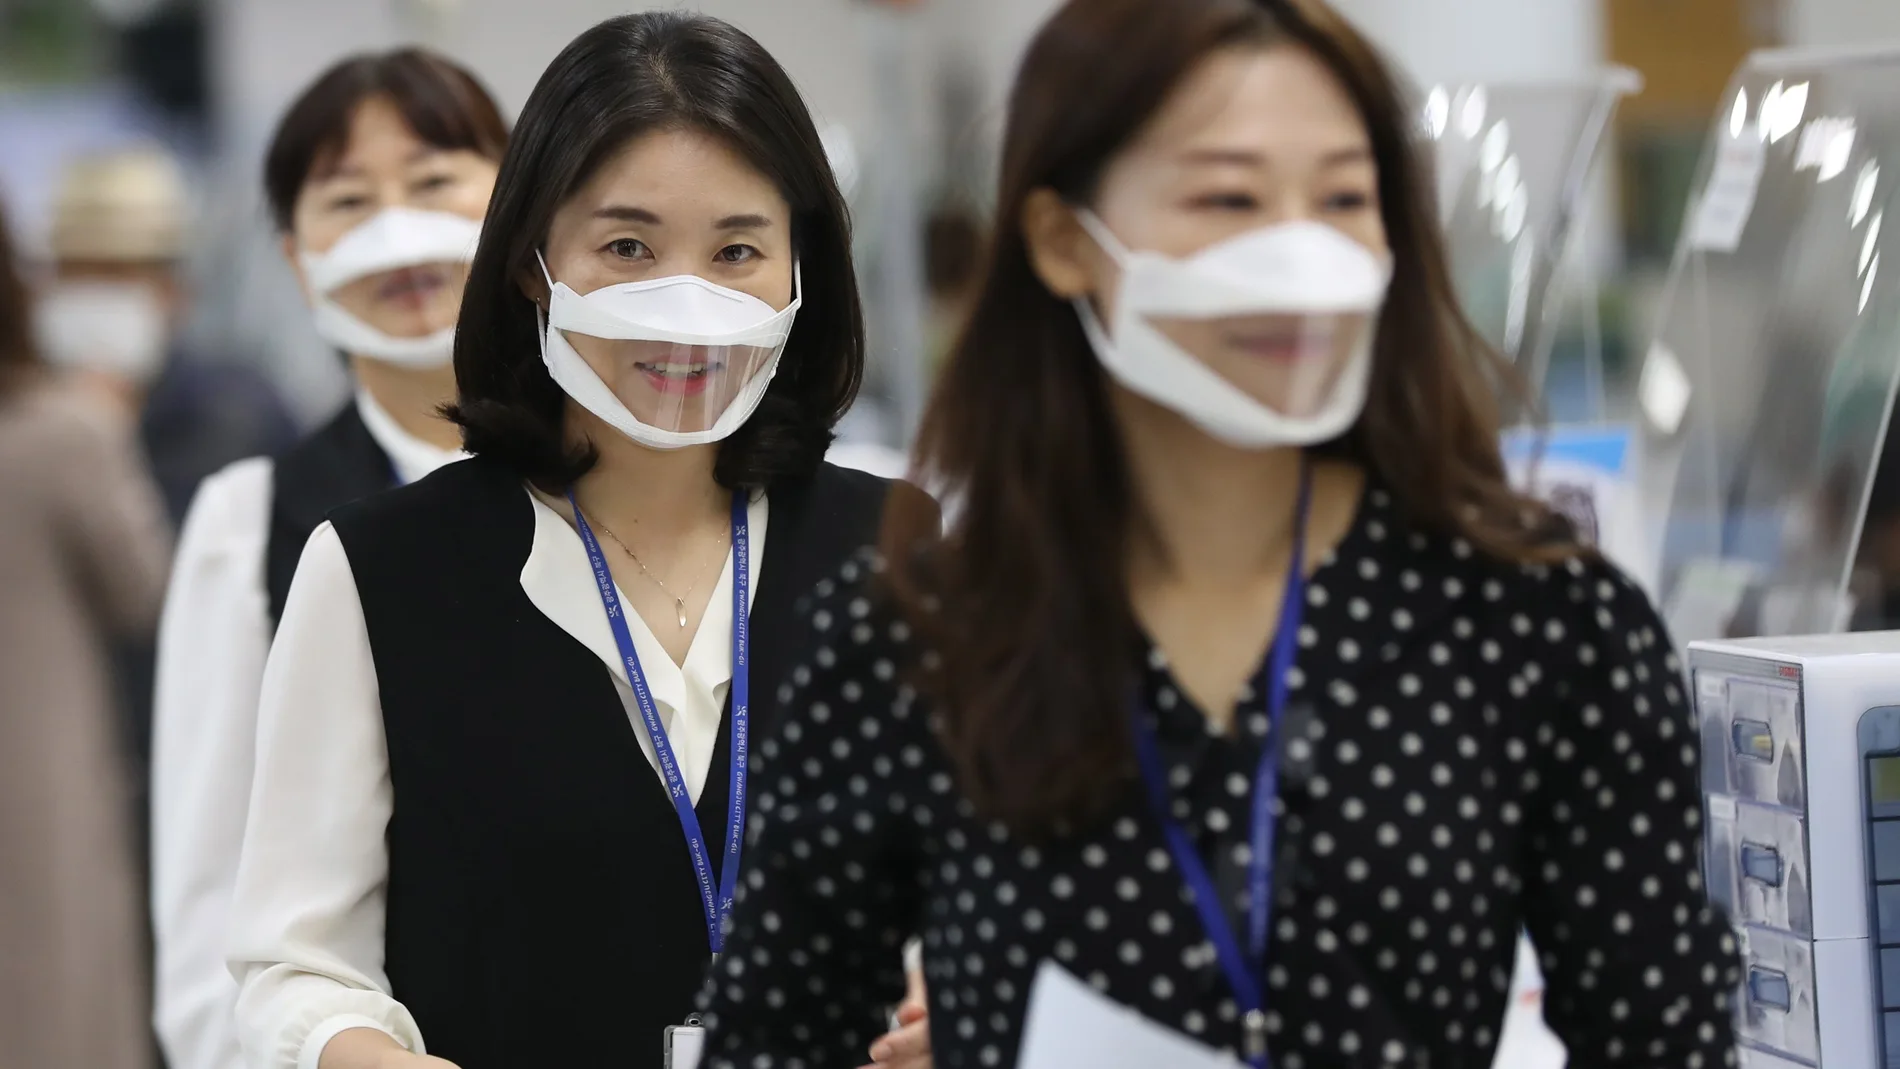 Unas empleadas llevan unas mascarillas con una parte transparente en una oficina de distrito de la ciudad de Gwangju, Corea del Sur